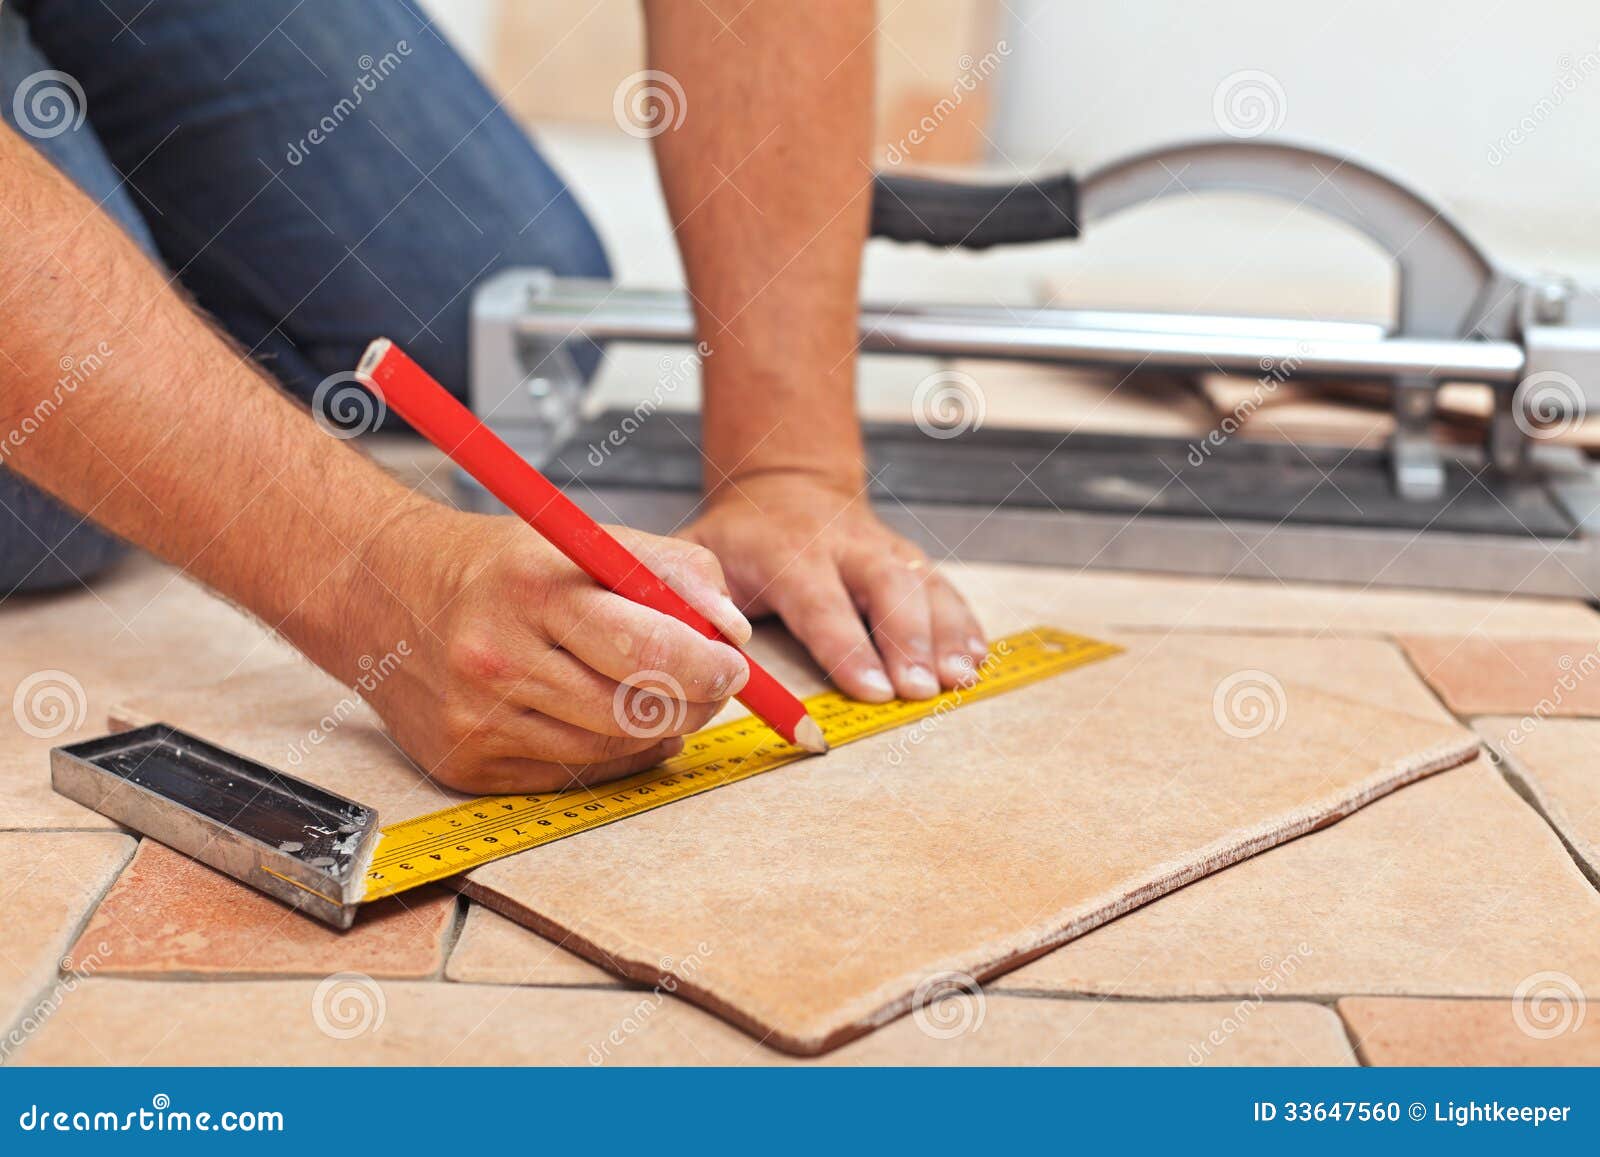 laying ceramic floor tiles - man hands closeup